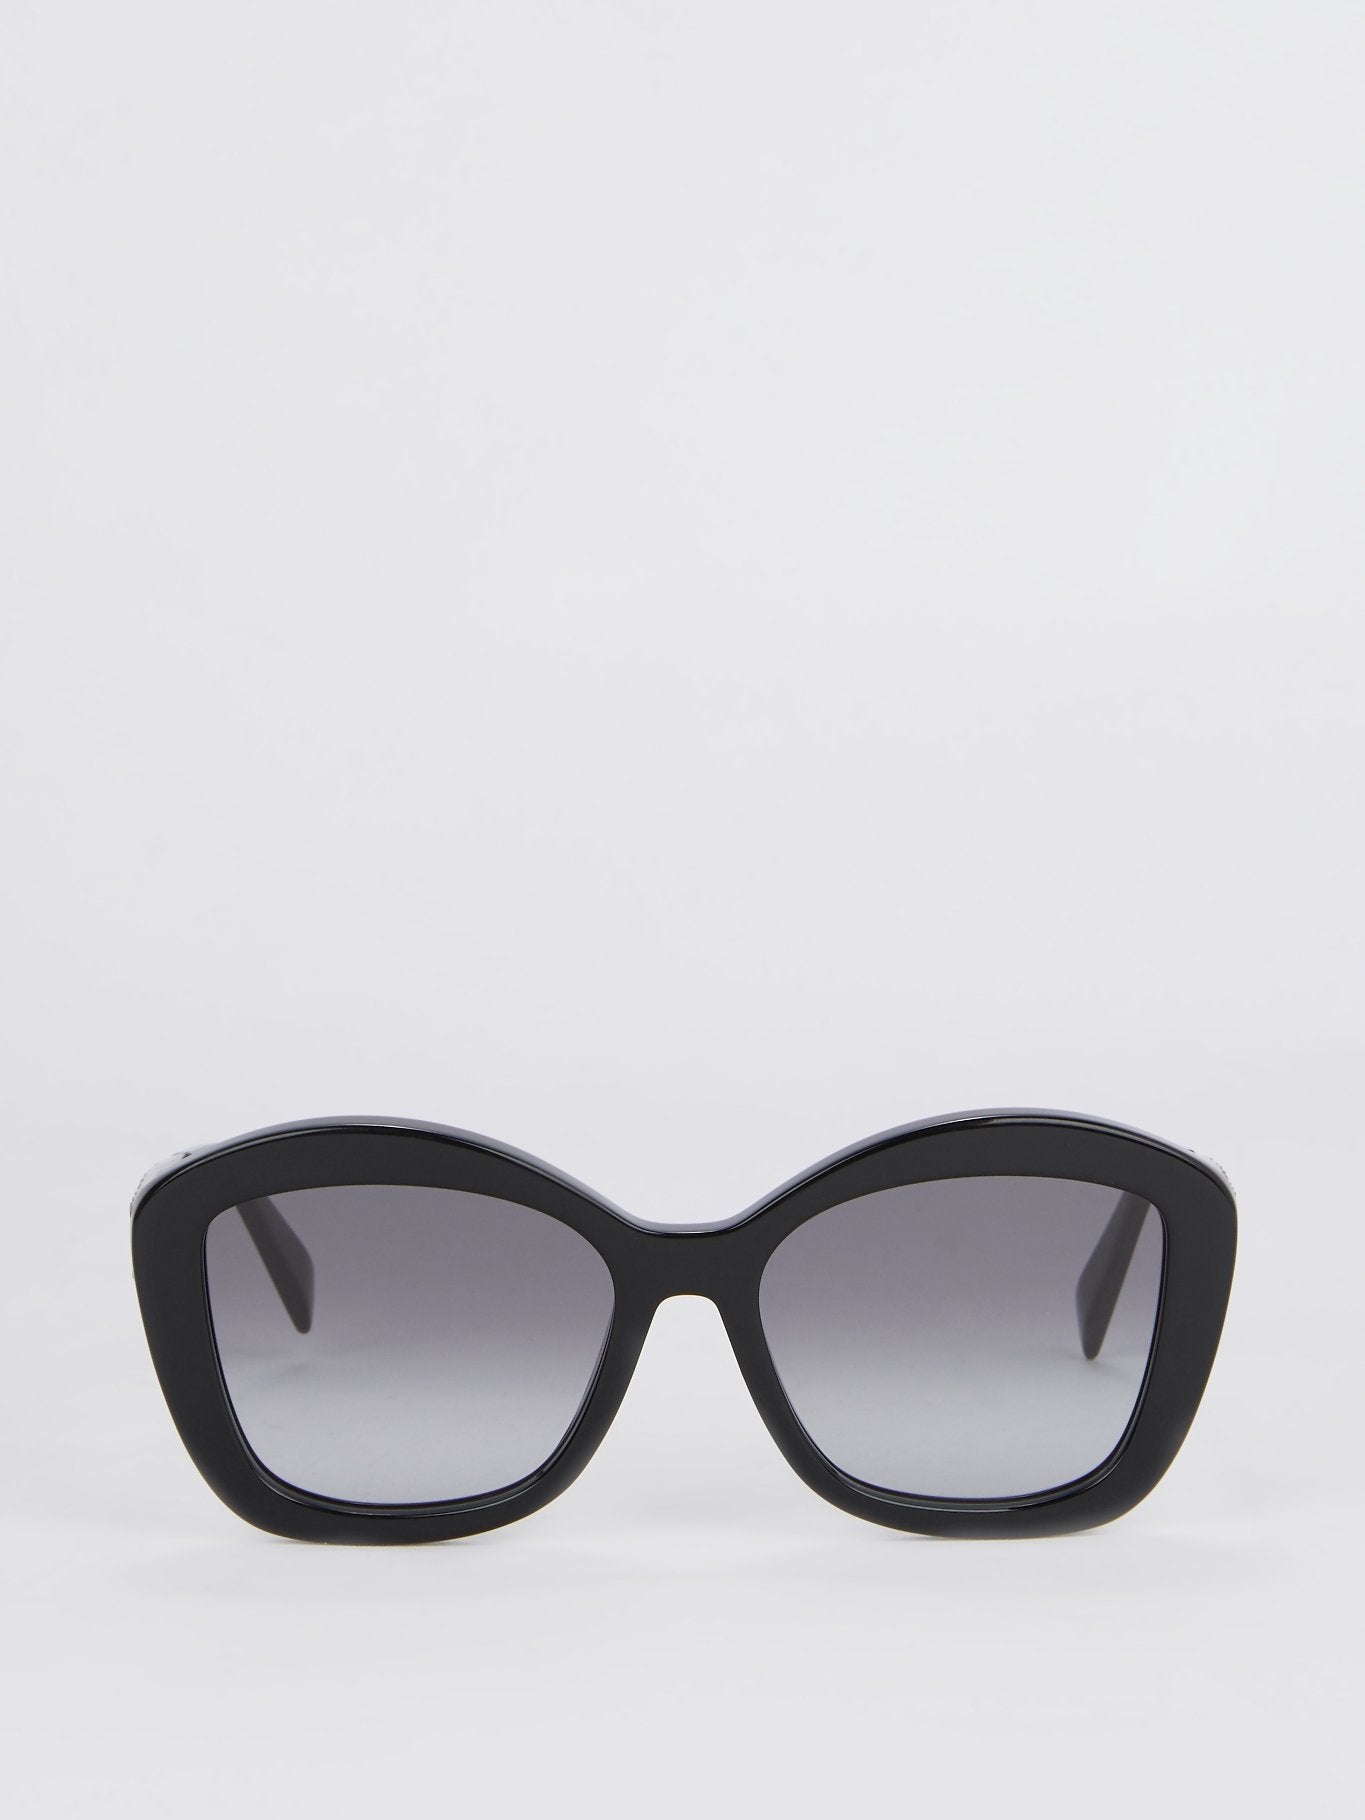 Shiny Black Square Sunglasses